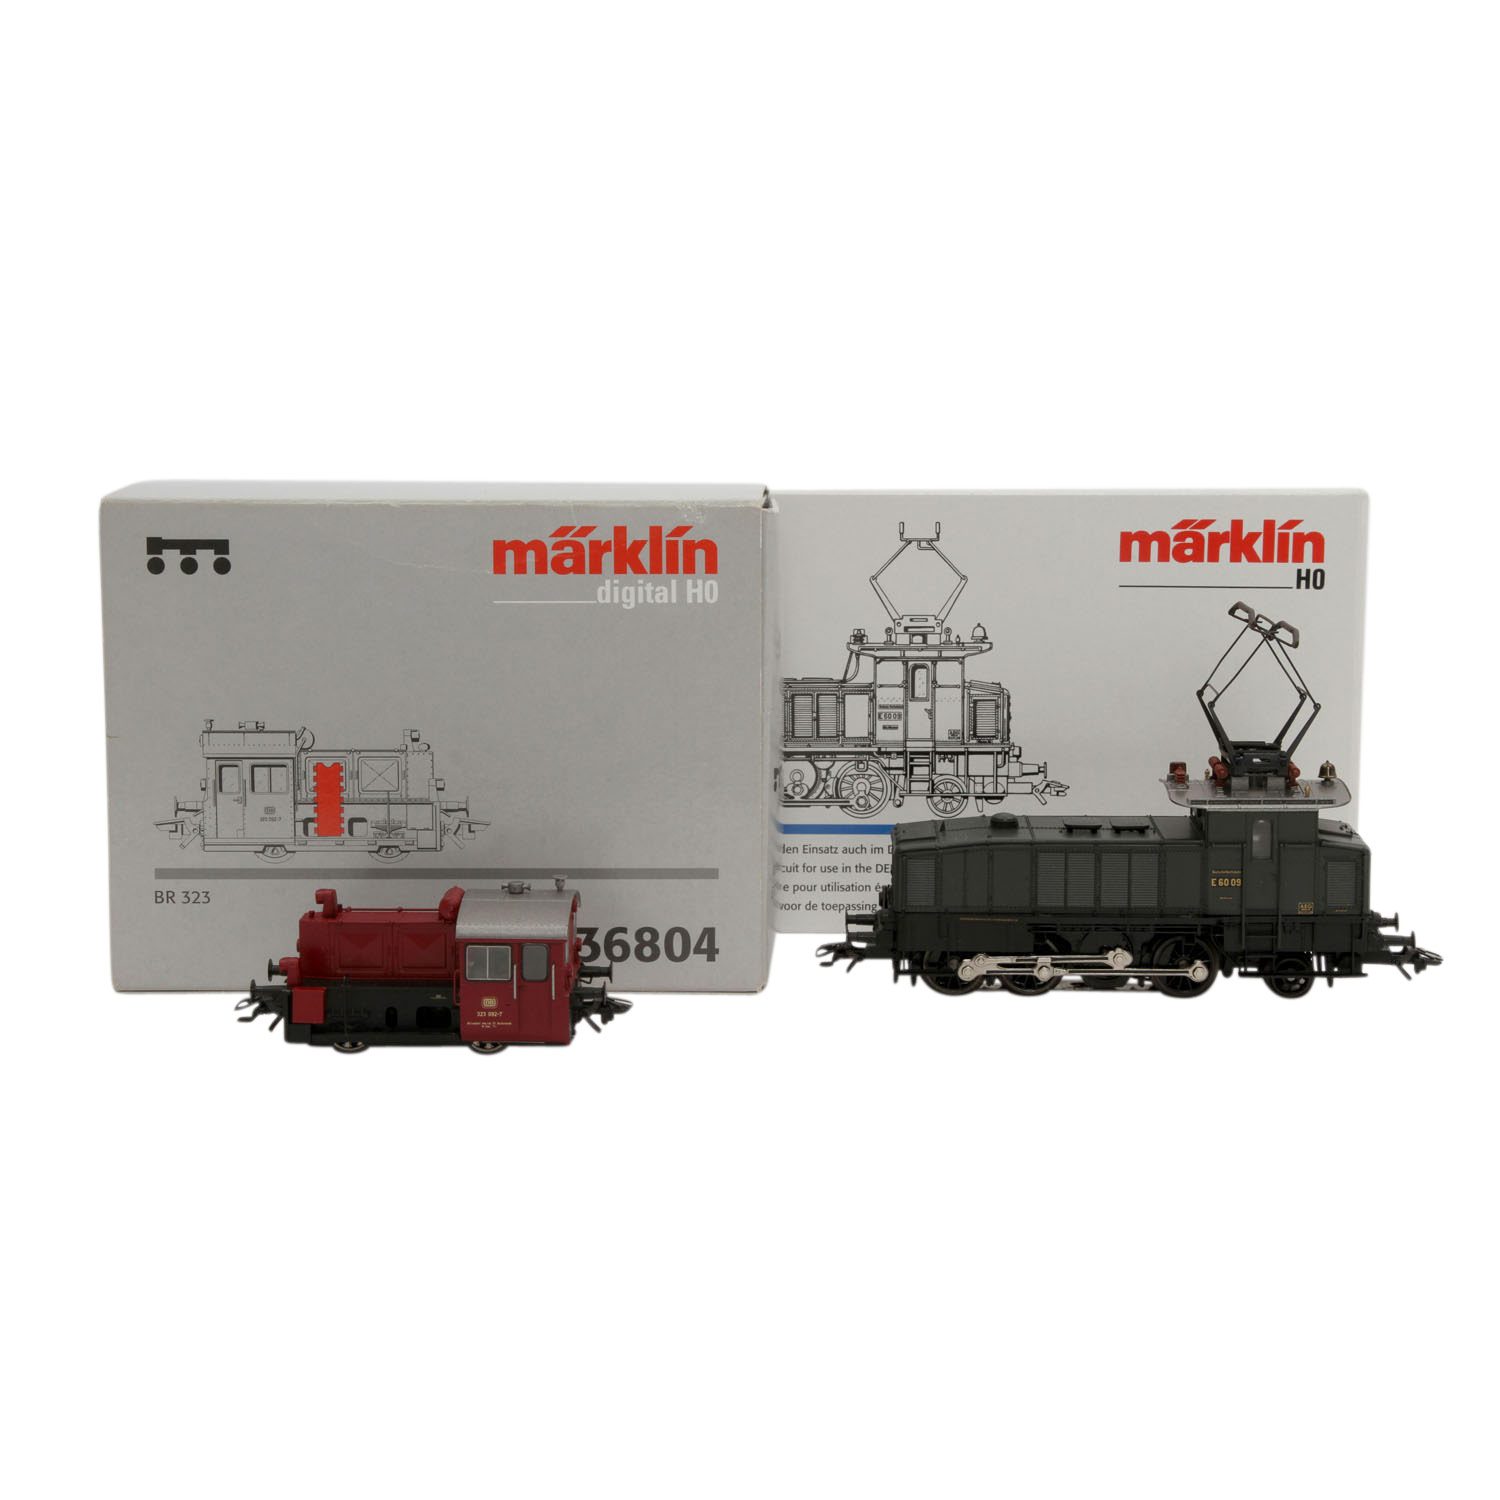 MÄRKLIN E-Lok 34561 und Diesellok 36804, delta/digital H0,Kunststoff-Gehäuse, bestehend aus 34561: